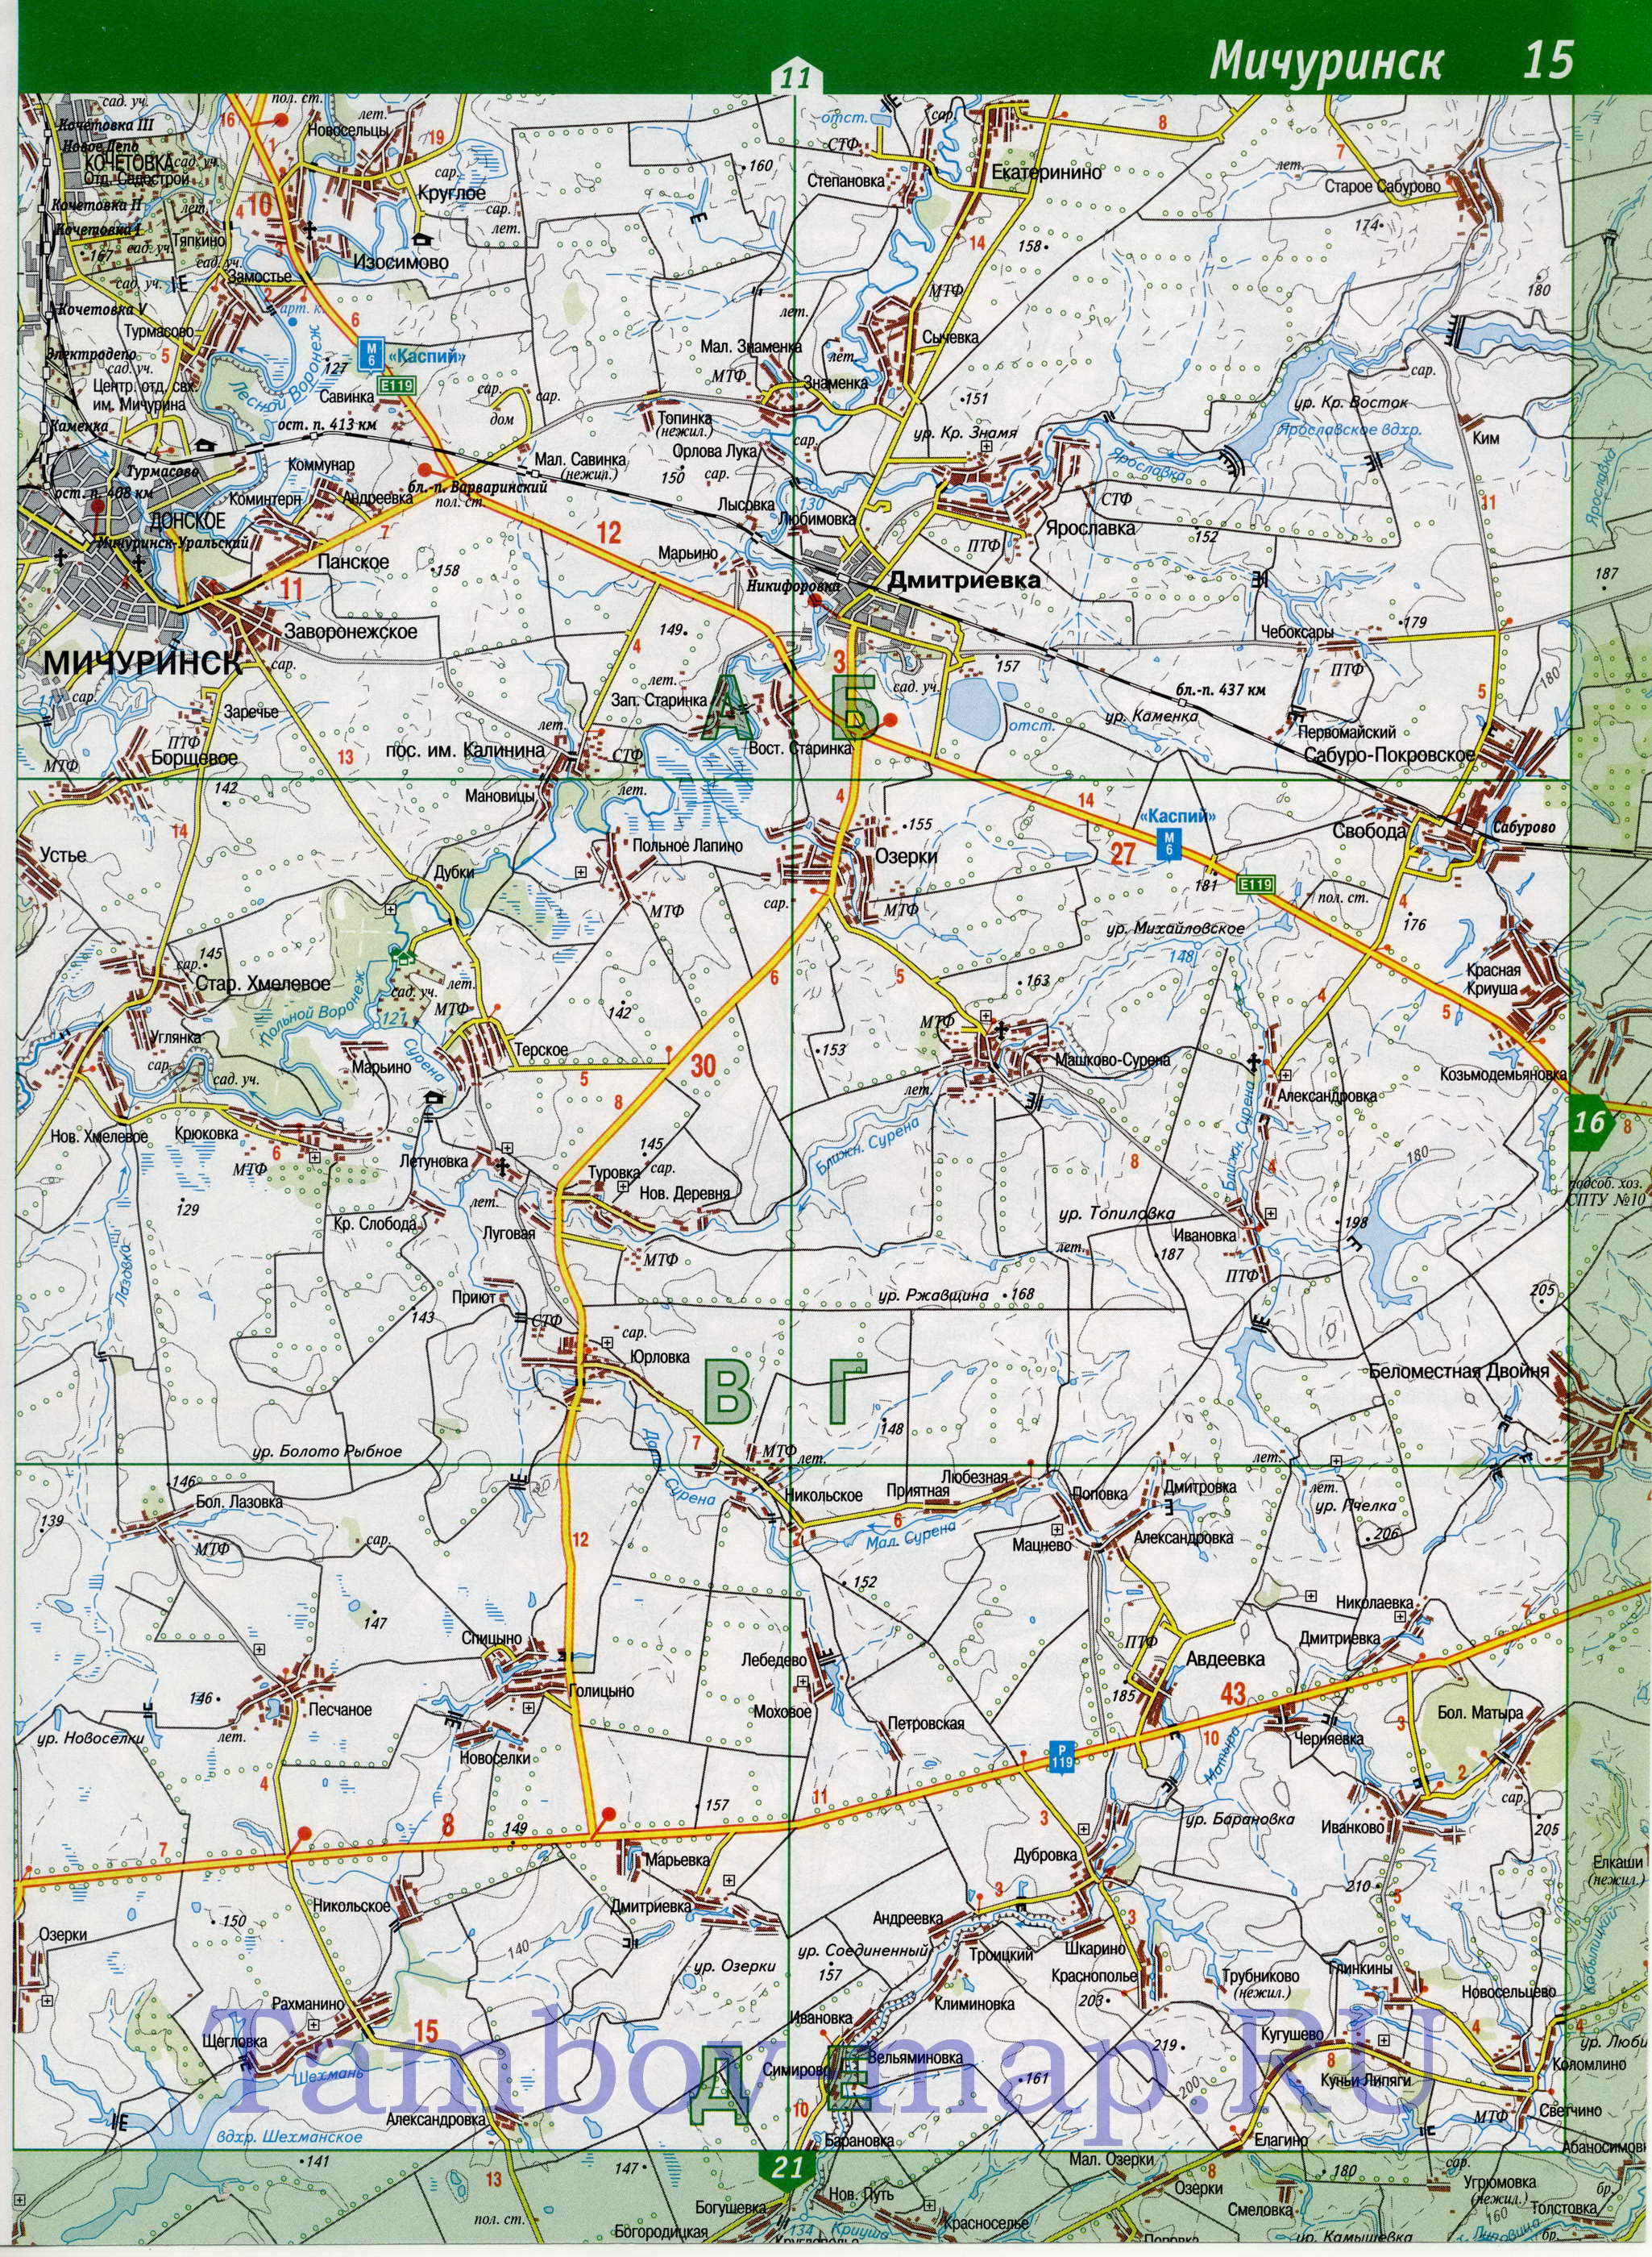 Карта Тамбовской области топографическая. Тамбовская область - подробная топографическая карта масштаба 1см:2км, B1 - 